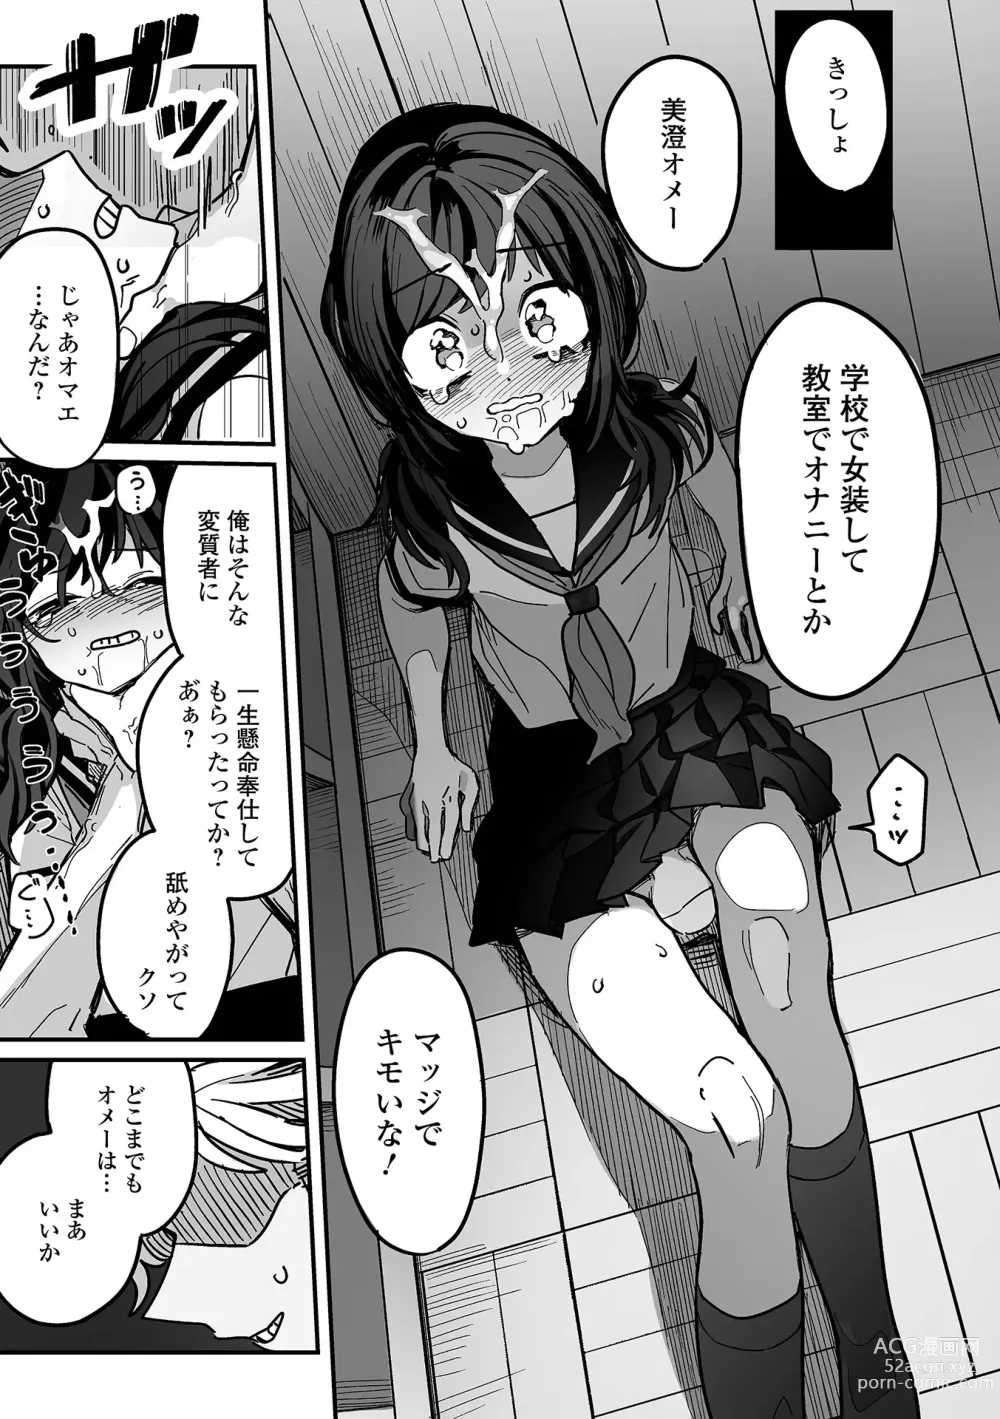 Page 95 of manga Gekkan Web Otoko no Ko-llection! S Vol. 94